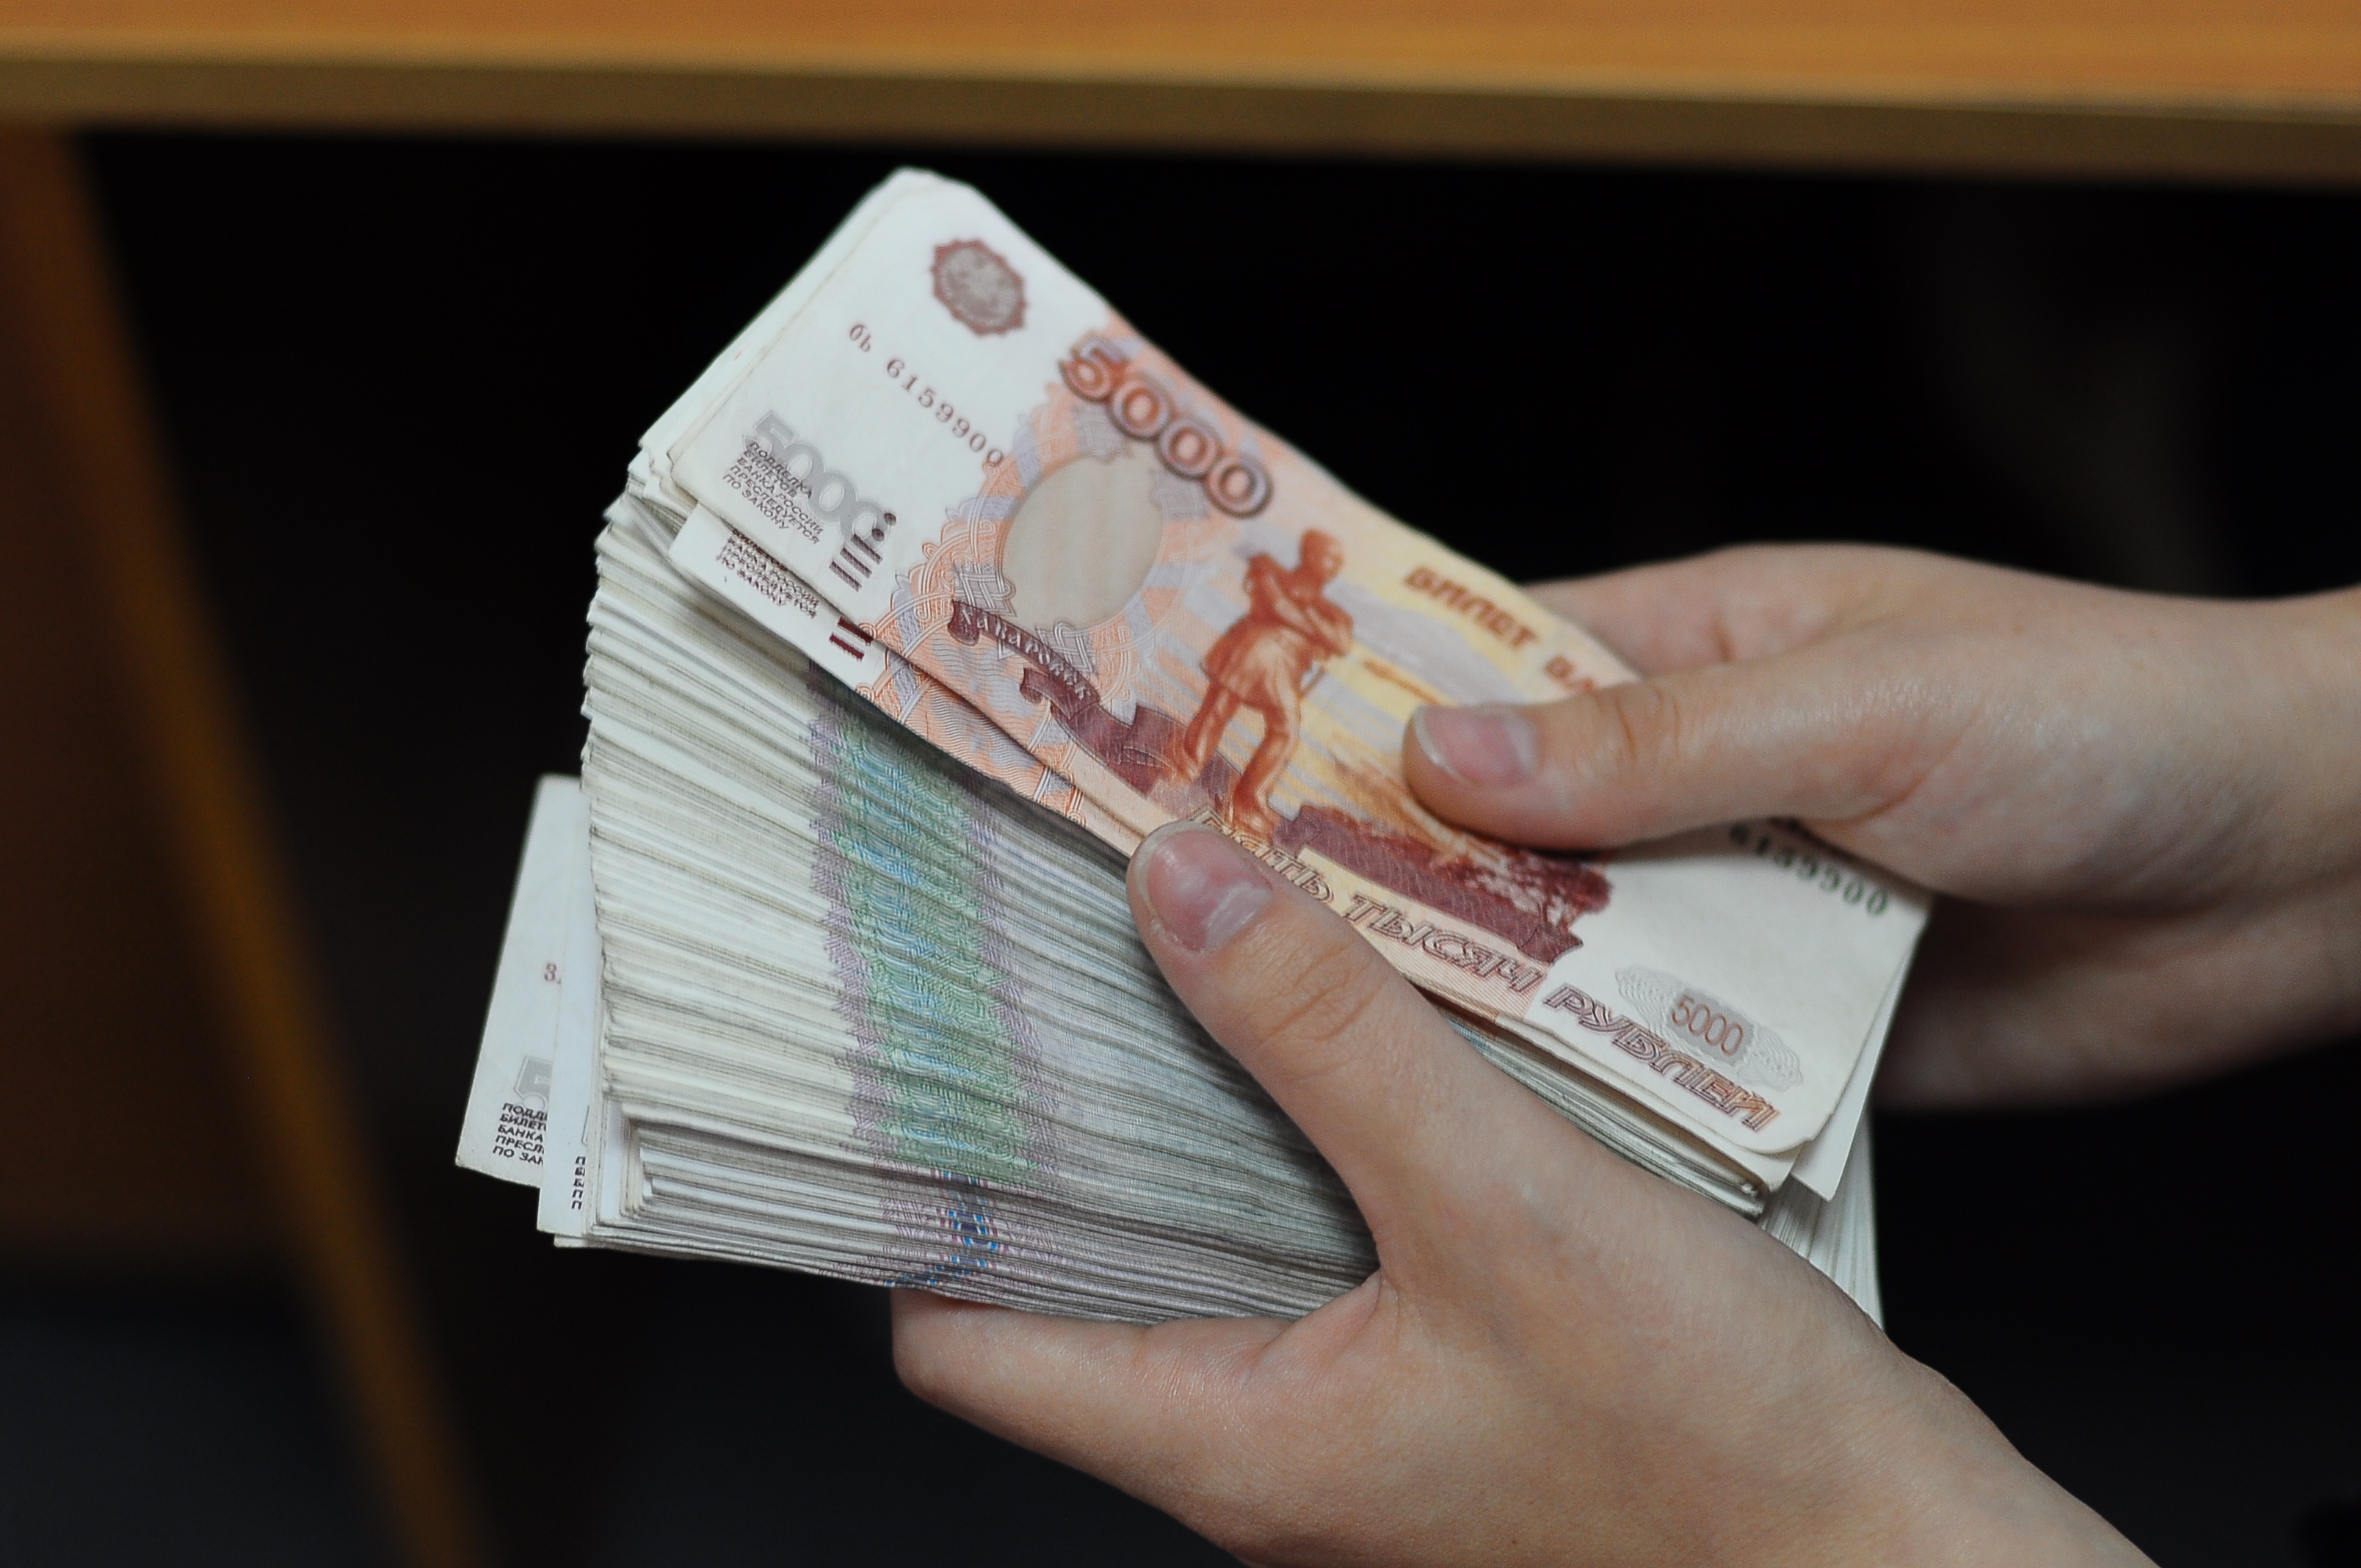 650 000 руб. Деньги в руках. Пачка денег в руках. Рубли в руках. Много рублей в руках.